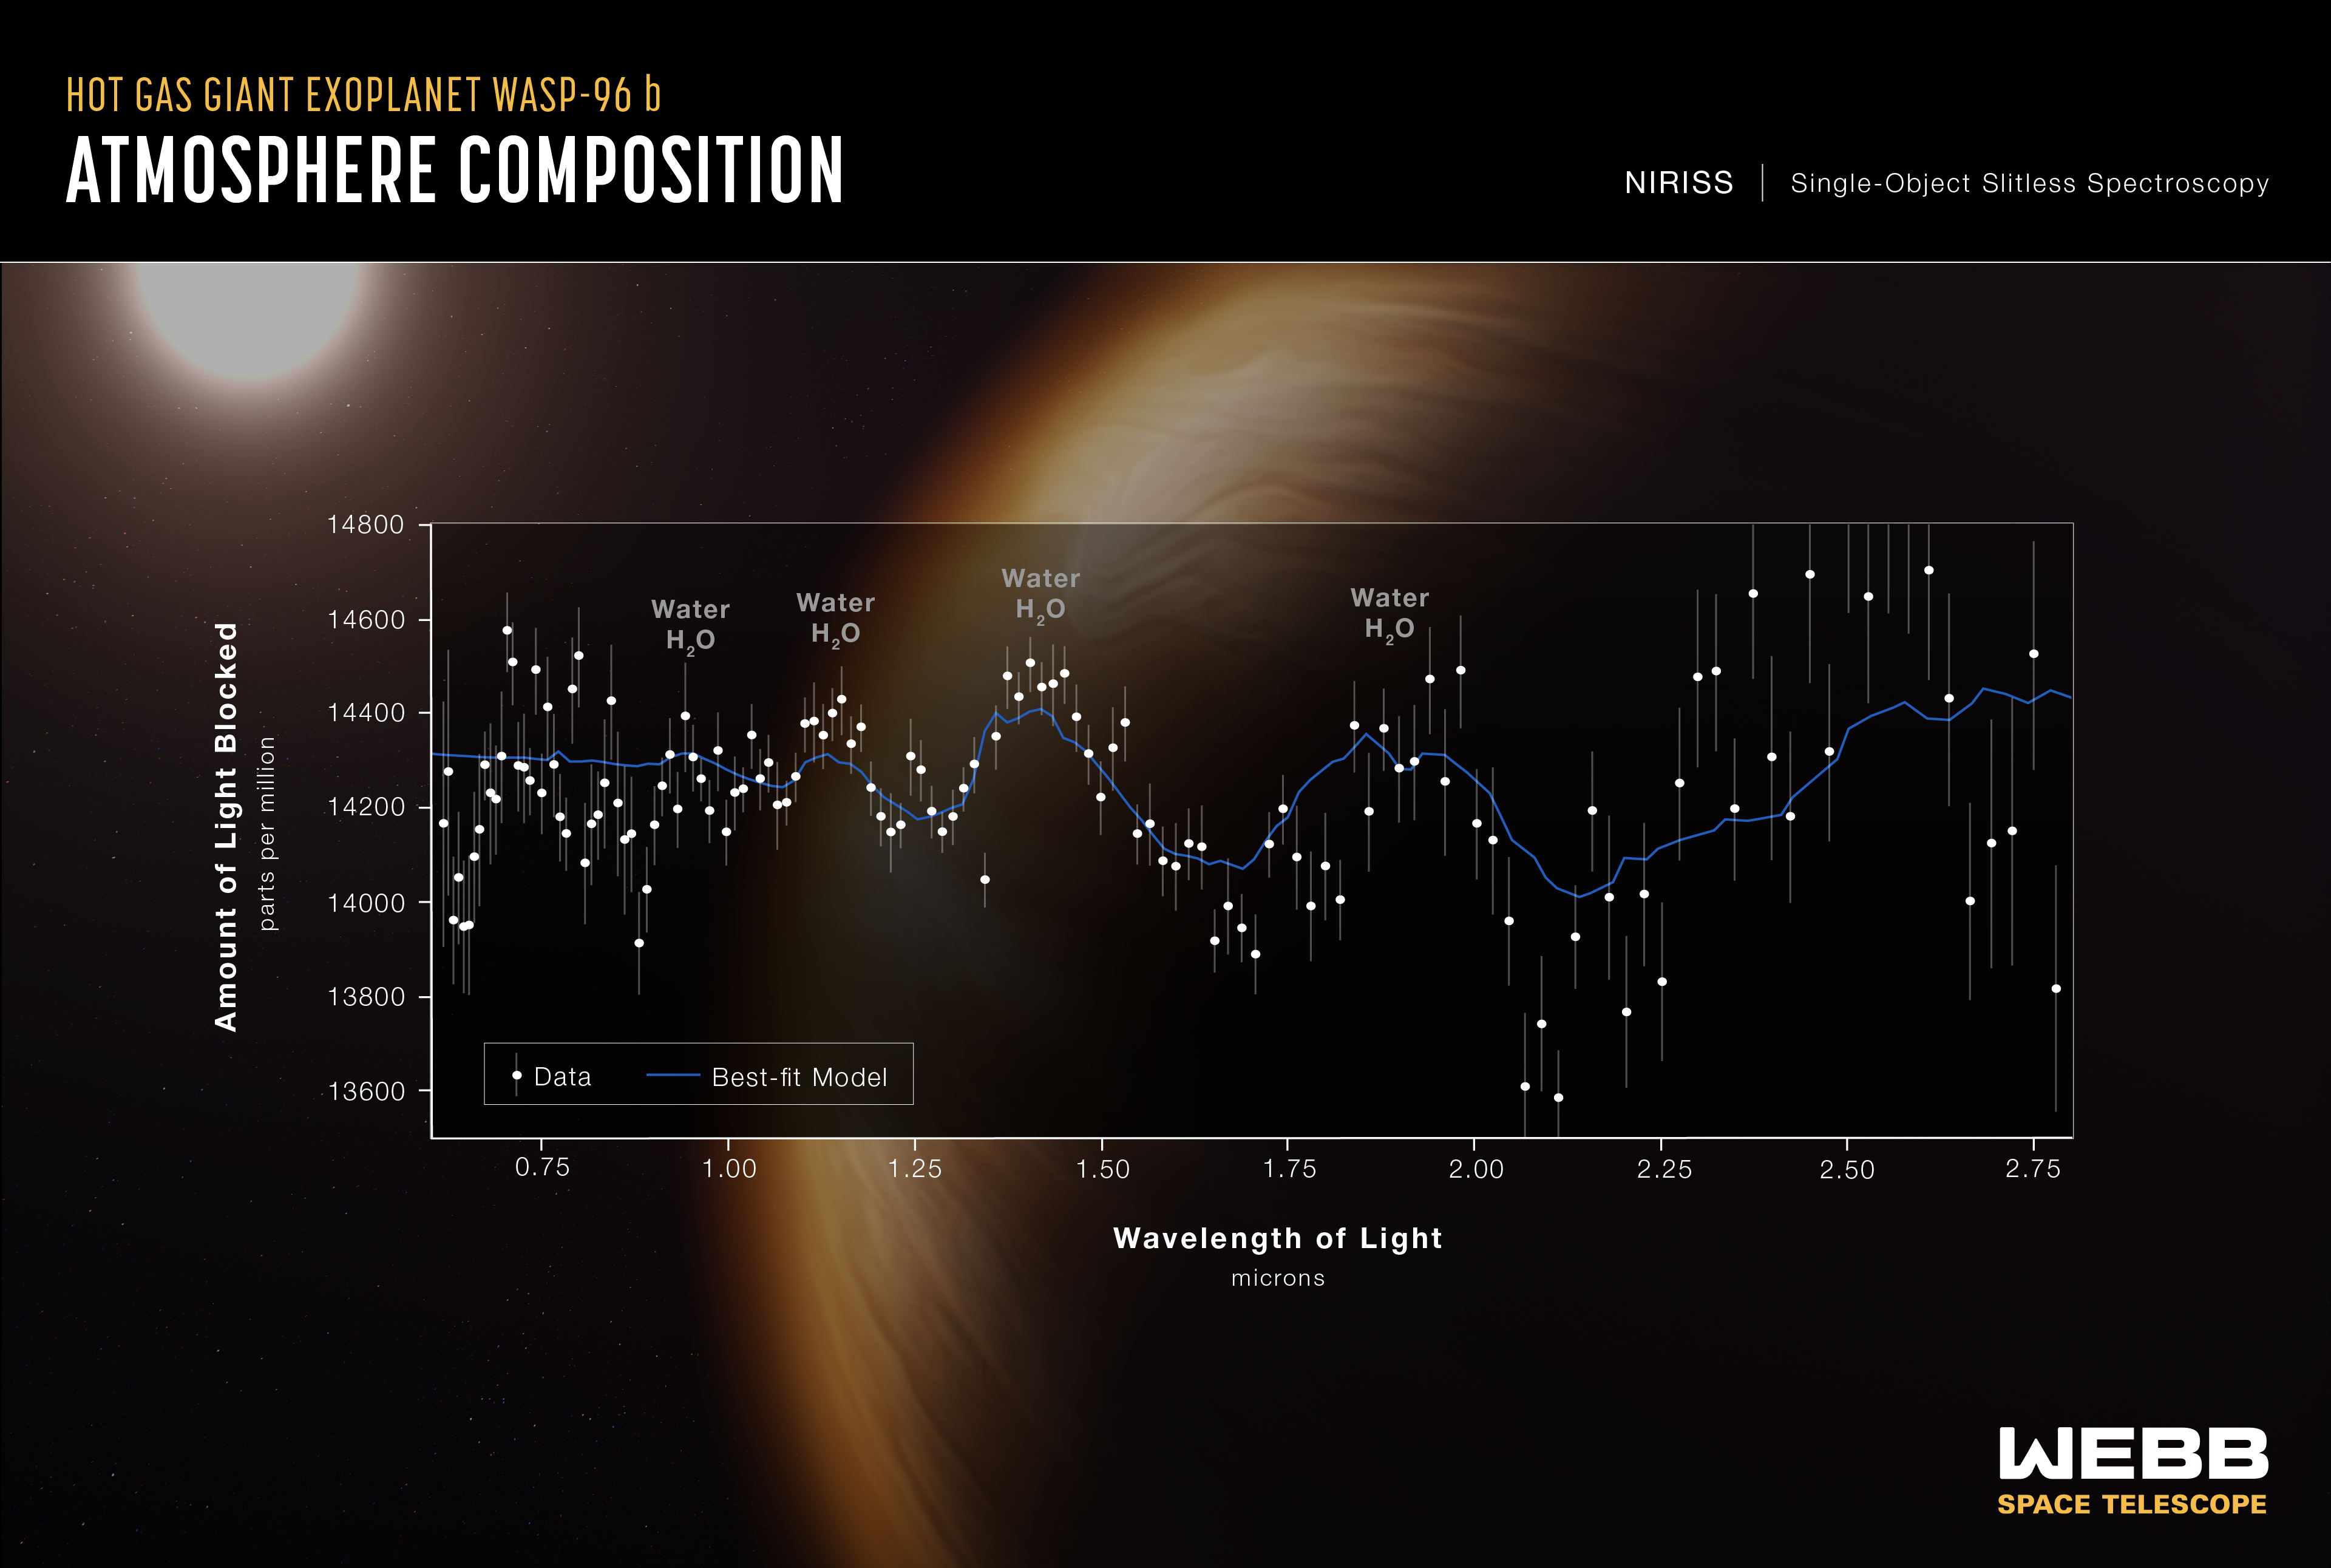 Widmo transmisyjne atmosfery egzoplanety WASP-96 b w bliskiej podczerwieni (λ~0,6-2,8µm) wykonane w dn. 21 czerwca 2022 r. przez instrument NIRISS współpracujący z Teleskopem Webba. Gwiazda macierzysta WASP-96 ma parametry fizyczne podobne do Słońca i znajduje się w odległości około 1150 l.św. od nas. Natomiast WASP-96 b jest egzoplanetą – „gorącym olbrzymem” (1,2 RJ, 0,48 MJ), która krąży wokół gwiazdy macierzystej w odległości 1/20 j.a. (~7 mln km) z okresem 3,5 ziemskiego dnia. Wstępna analiza widma tej planety wykazuje, że wysokość pików wodnych jest mniejsza niż oczekiwano z poprzednich obserwacji. Może to świadczyć o obecności chmur, które zmniejszają widoczność pary wodnej w widmie. Stopniowy spadek nachylenia widma po lewej stronie (mniejsze długości fali) wskazuje na obecność zamglenia w atmosferze egzoplanety. Na tej podstawie obliczono temperaturę atmosfery = +725C. Źródło: NASA, ESA, CSA, STScI